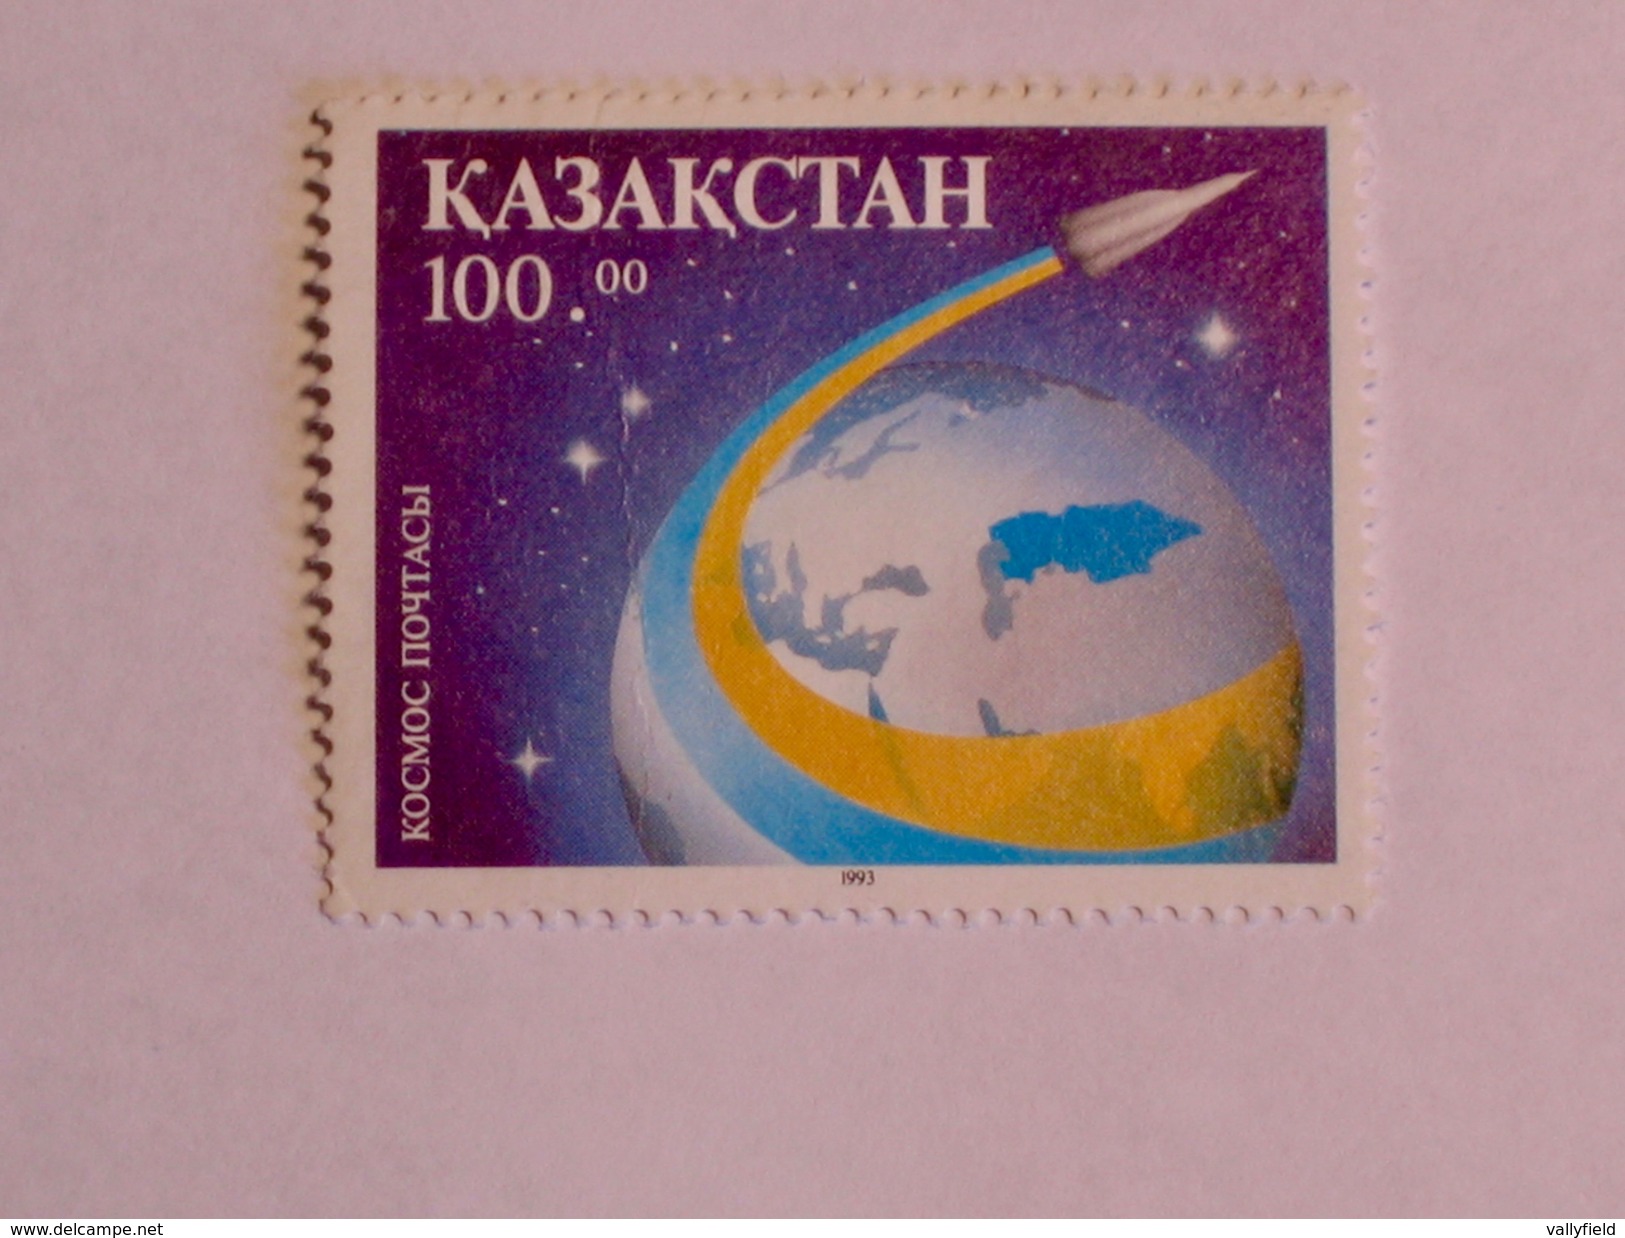 KAZAKSTAN  1993  LOT #2 SPACE - Kazakhstan